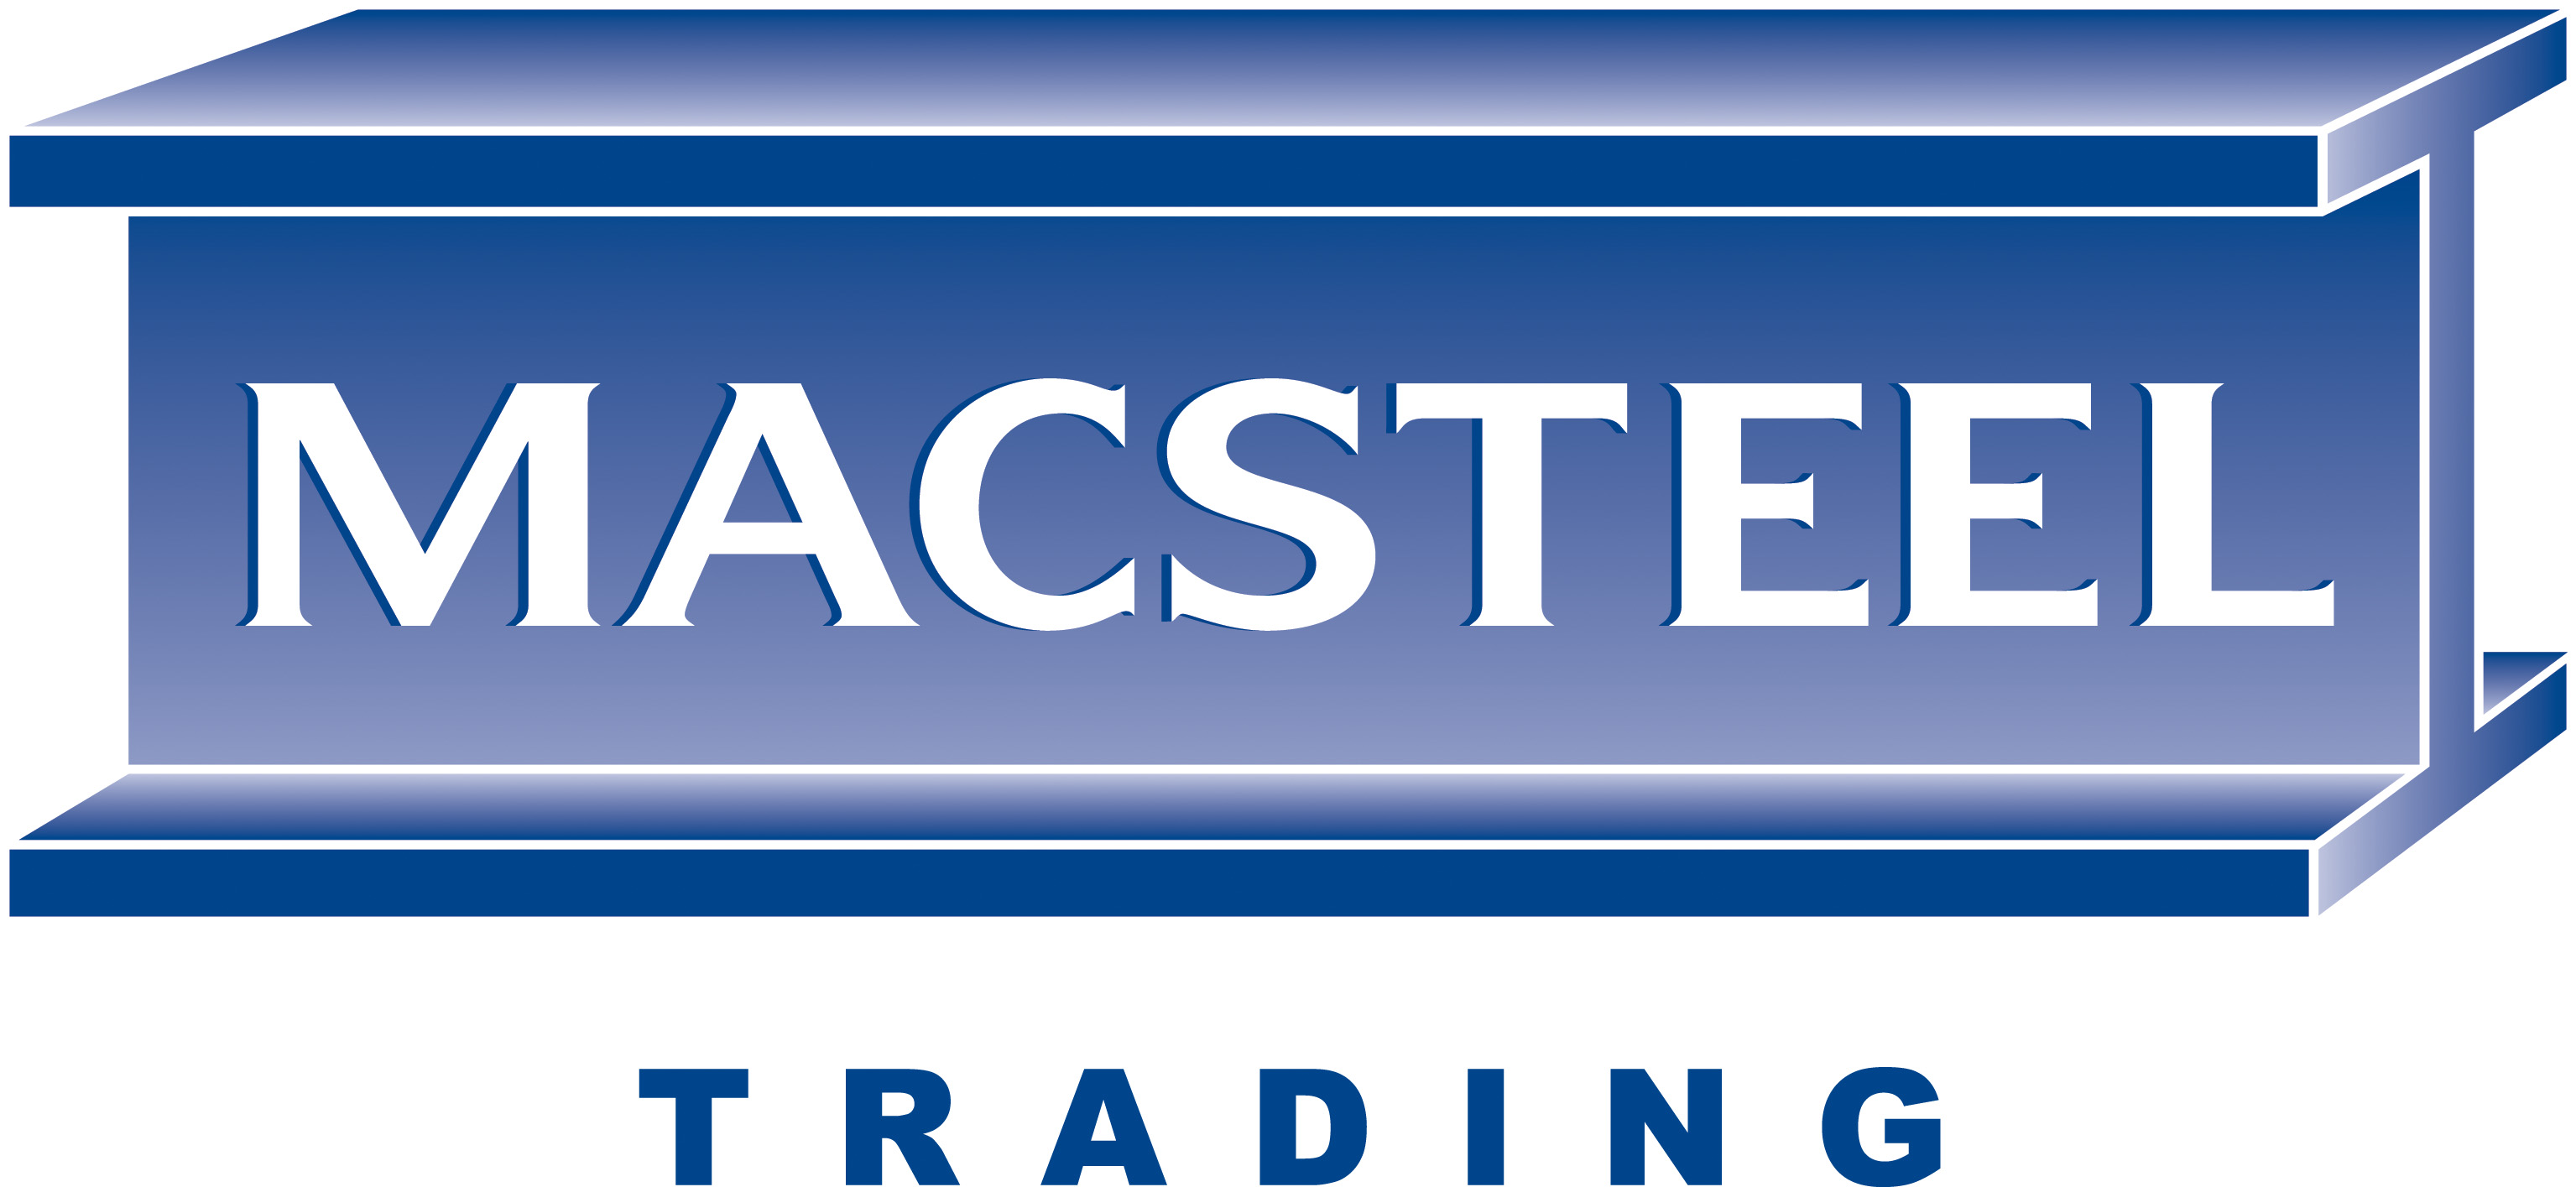 Macsteel Trading- Kimberley logo